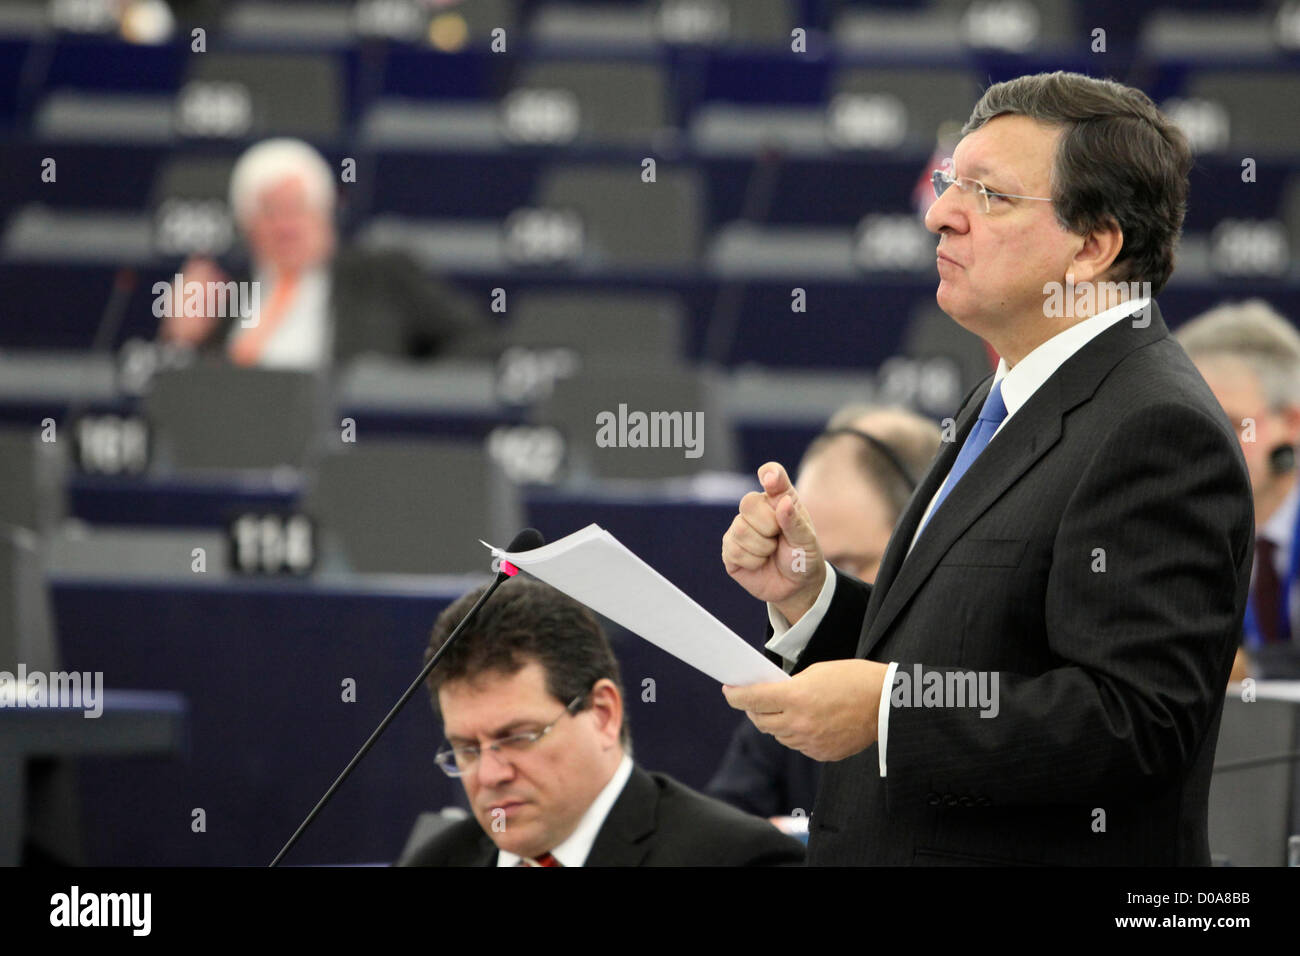 Emmanuel Barroso au Parlement européen Banque D'Images